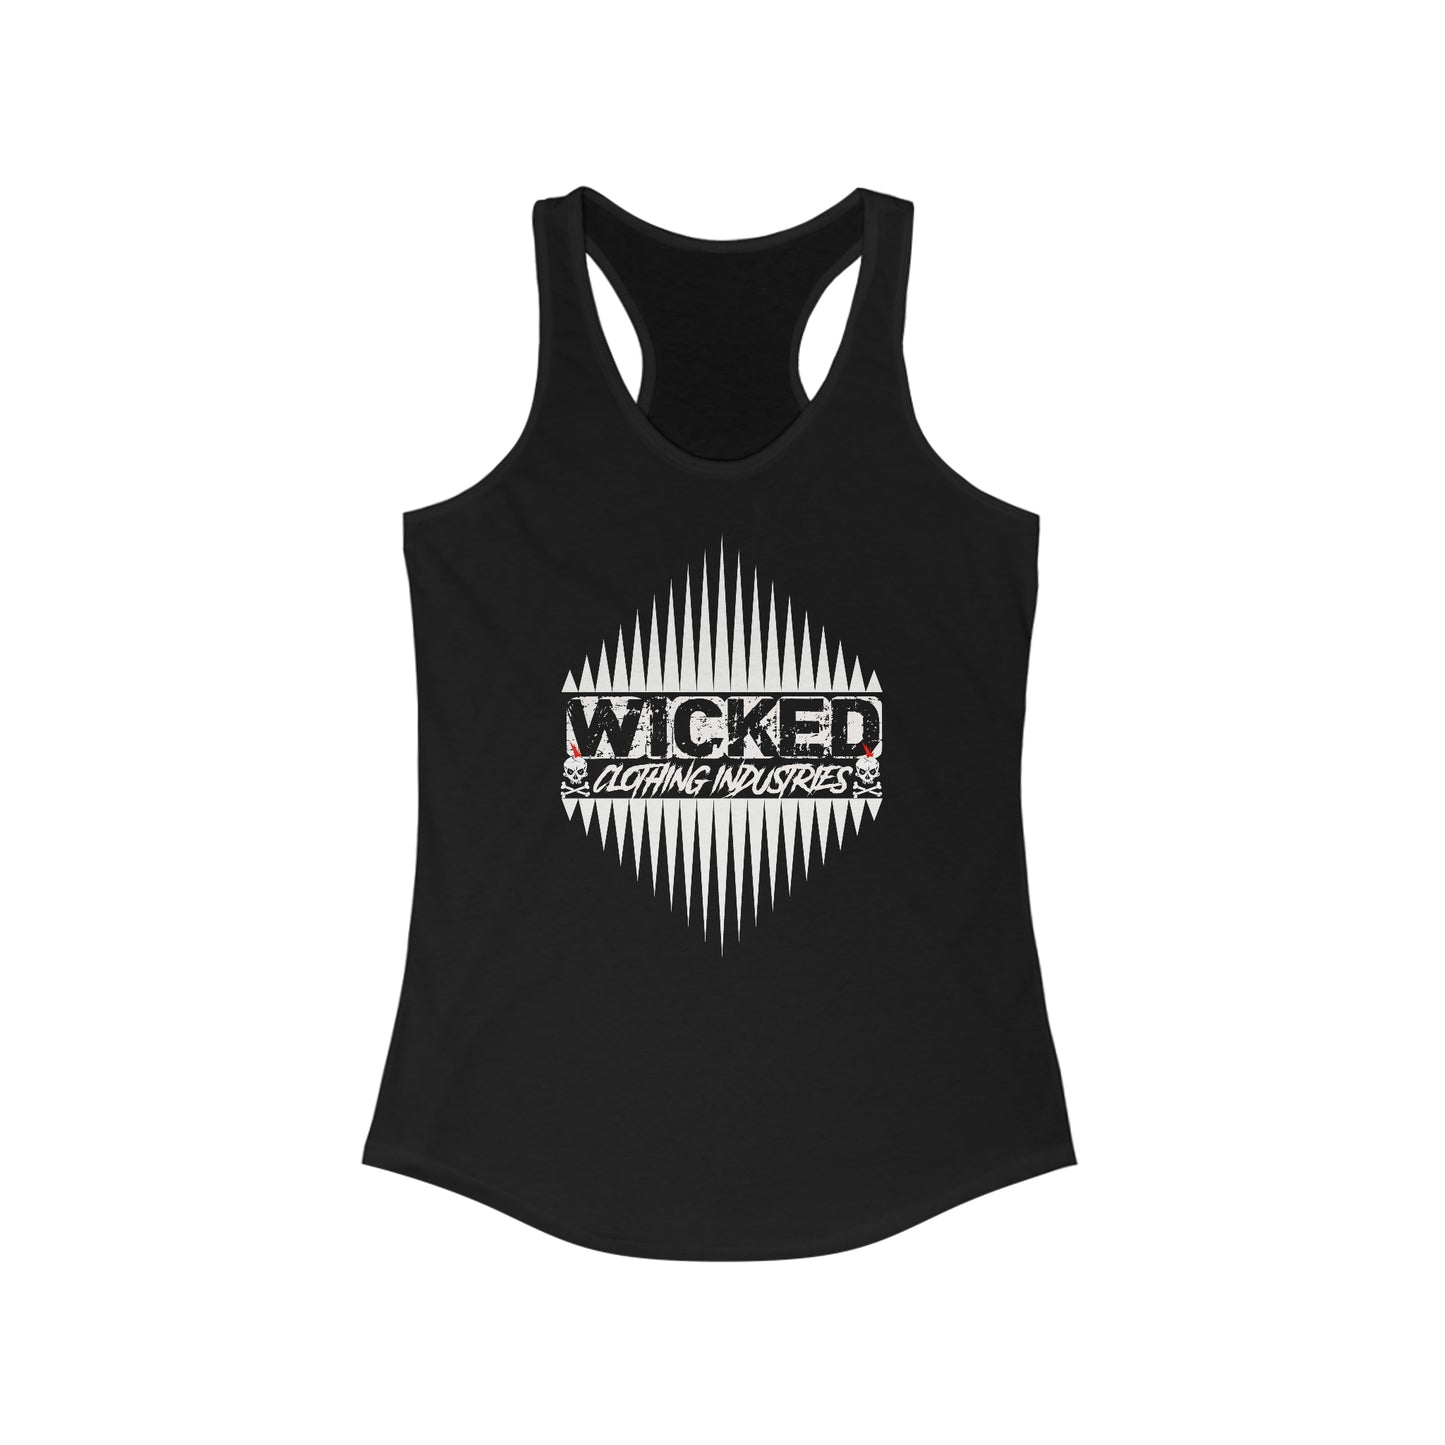 Wicked Punk Rock Racerback Tank Top